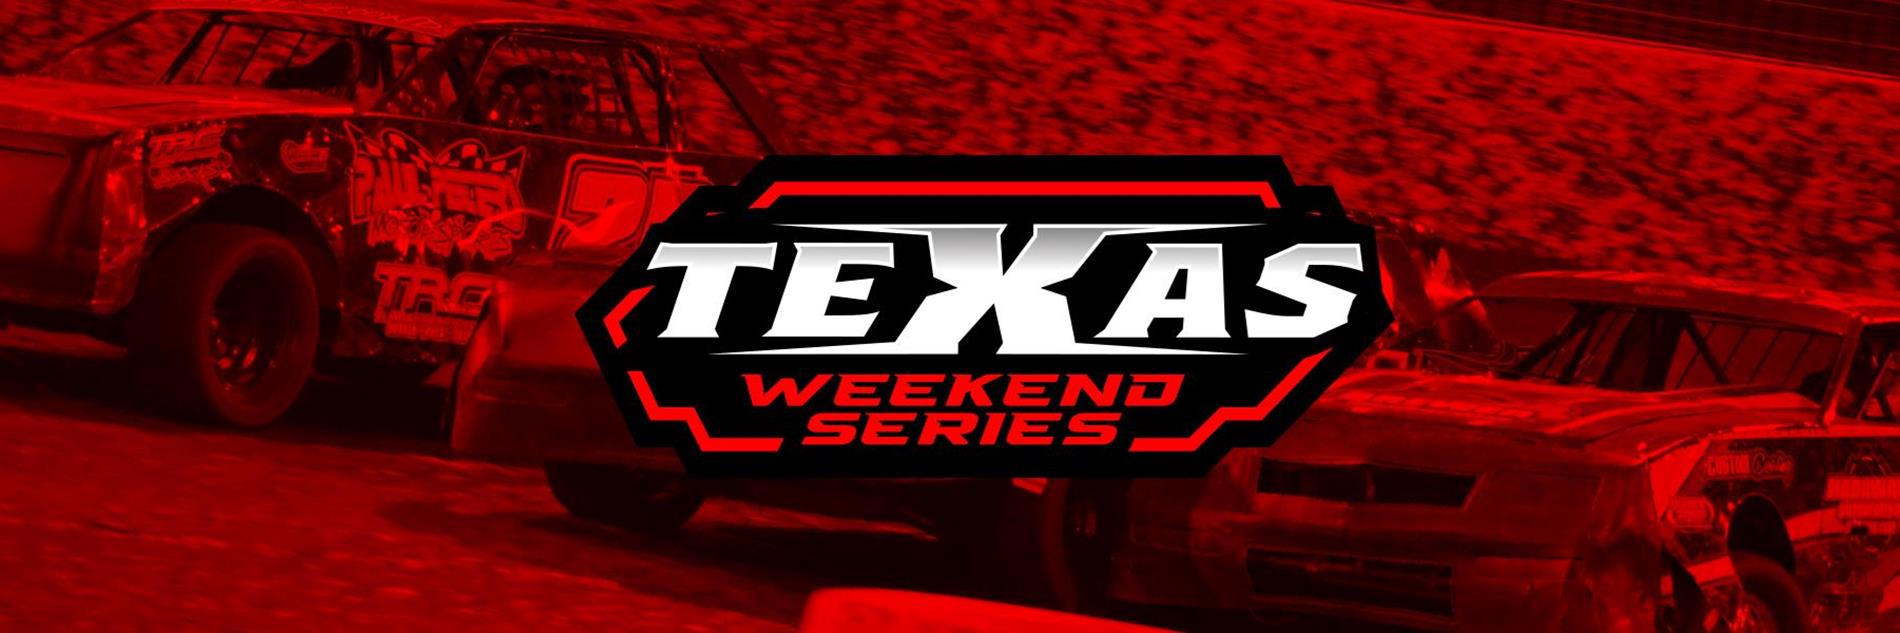 Texas Weekend Series